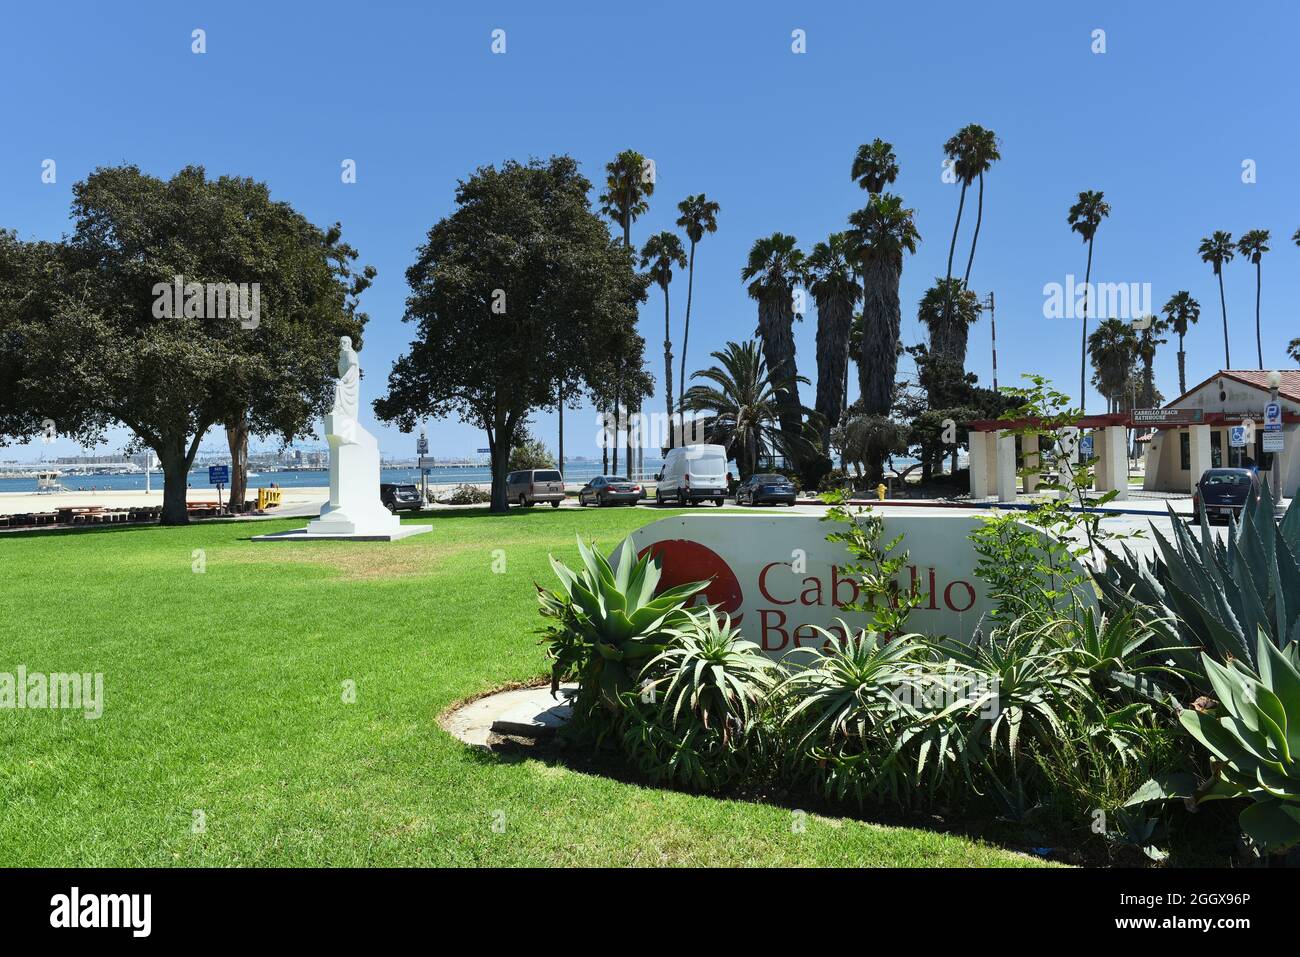 SAN PEDRO, CALIFORNIA - 27 AUG 2021: Juan Rodriguez Cabrillo Statue at the Bathhouse at Cabrillo Beach. Stock Photo